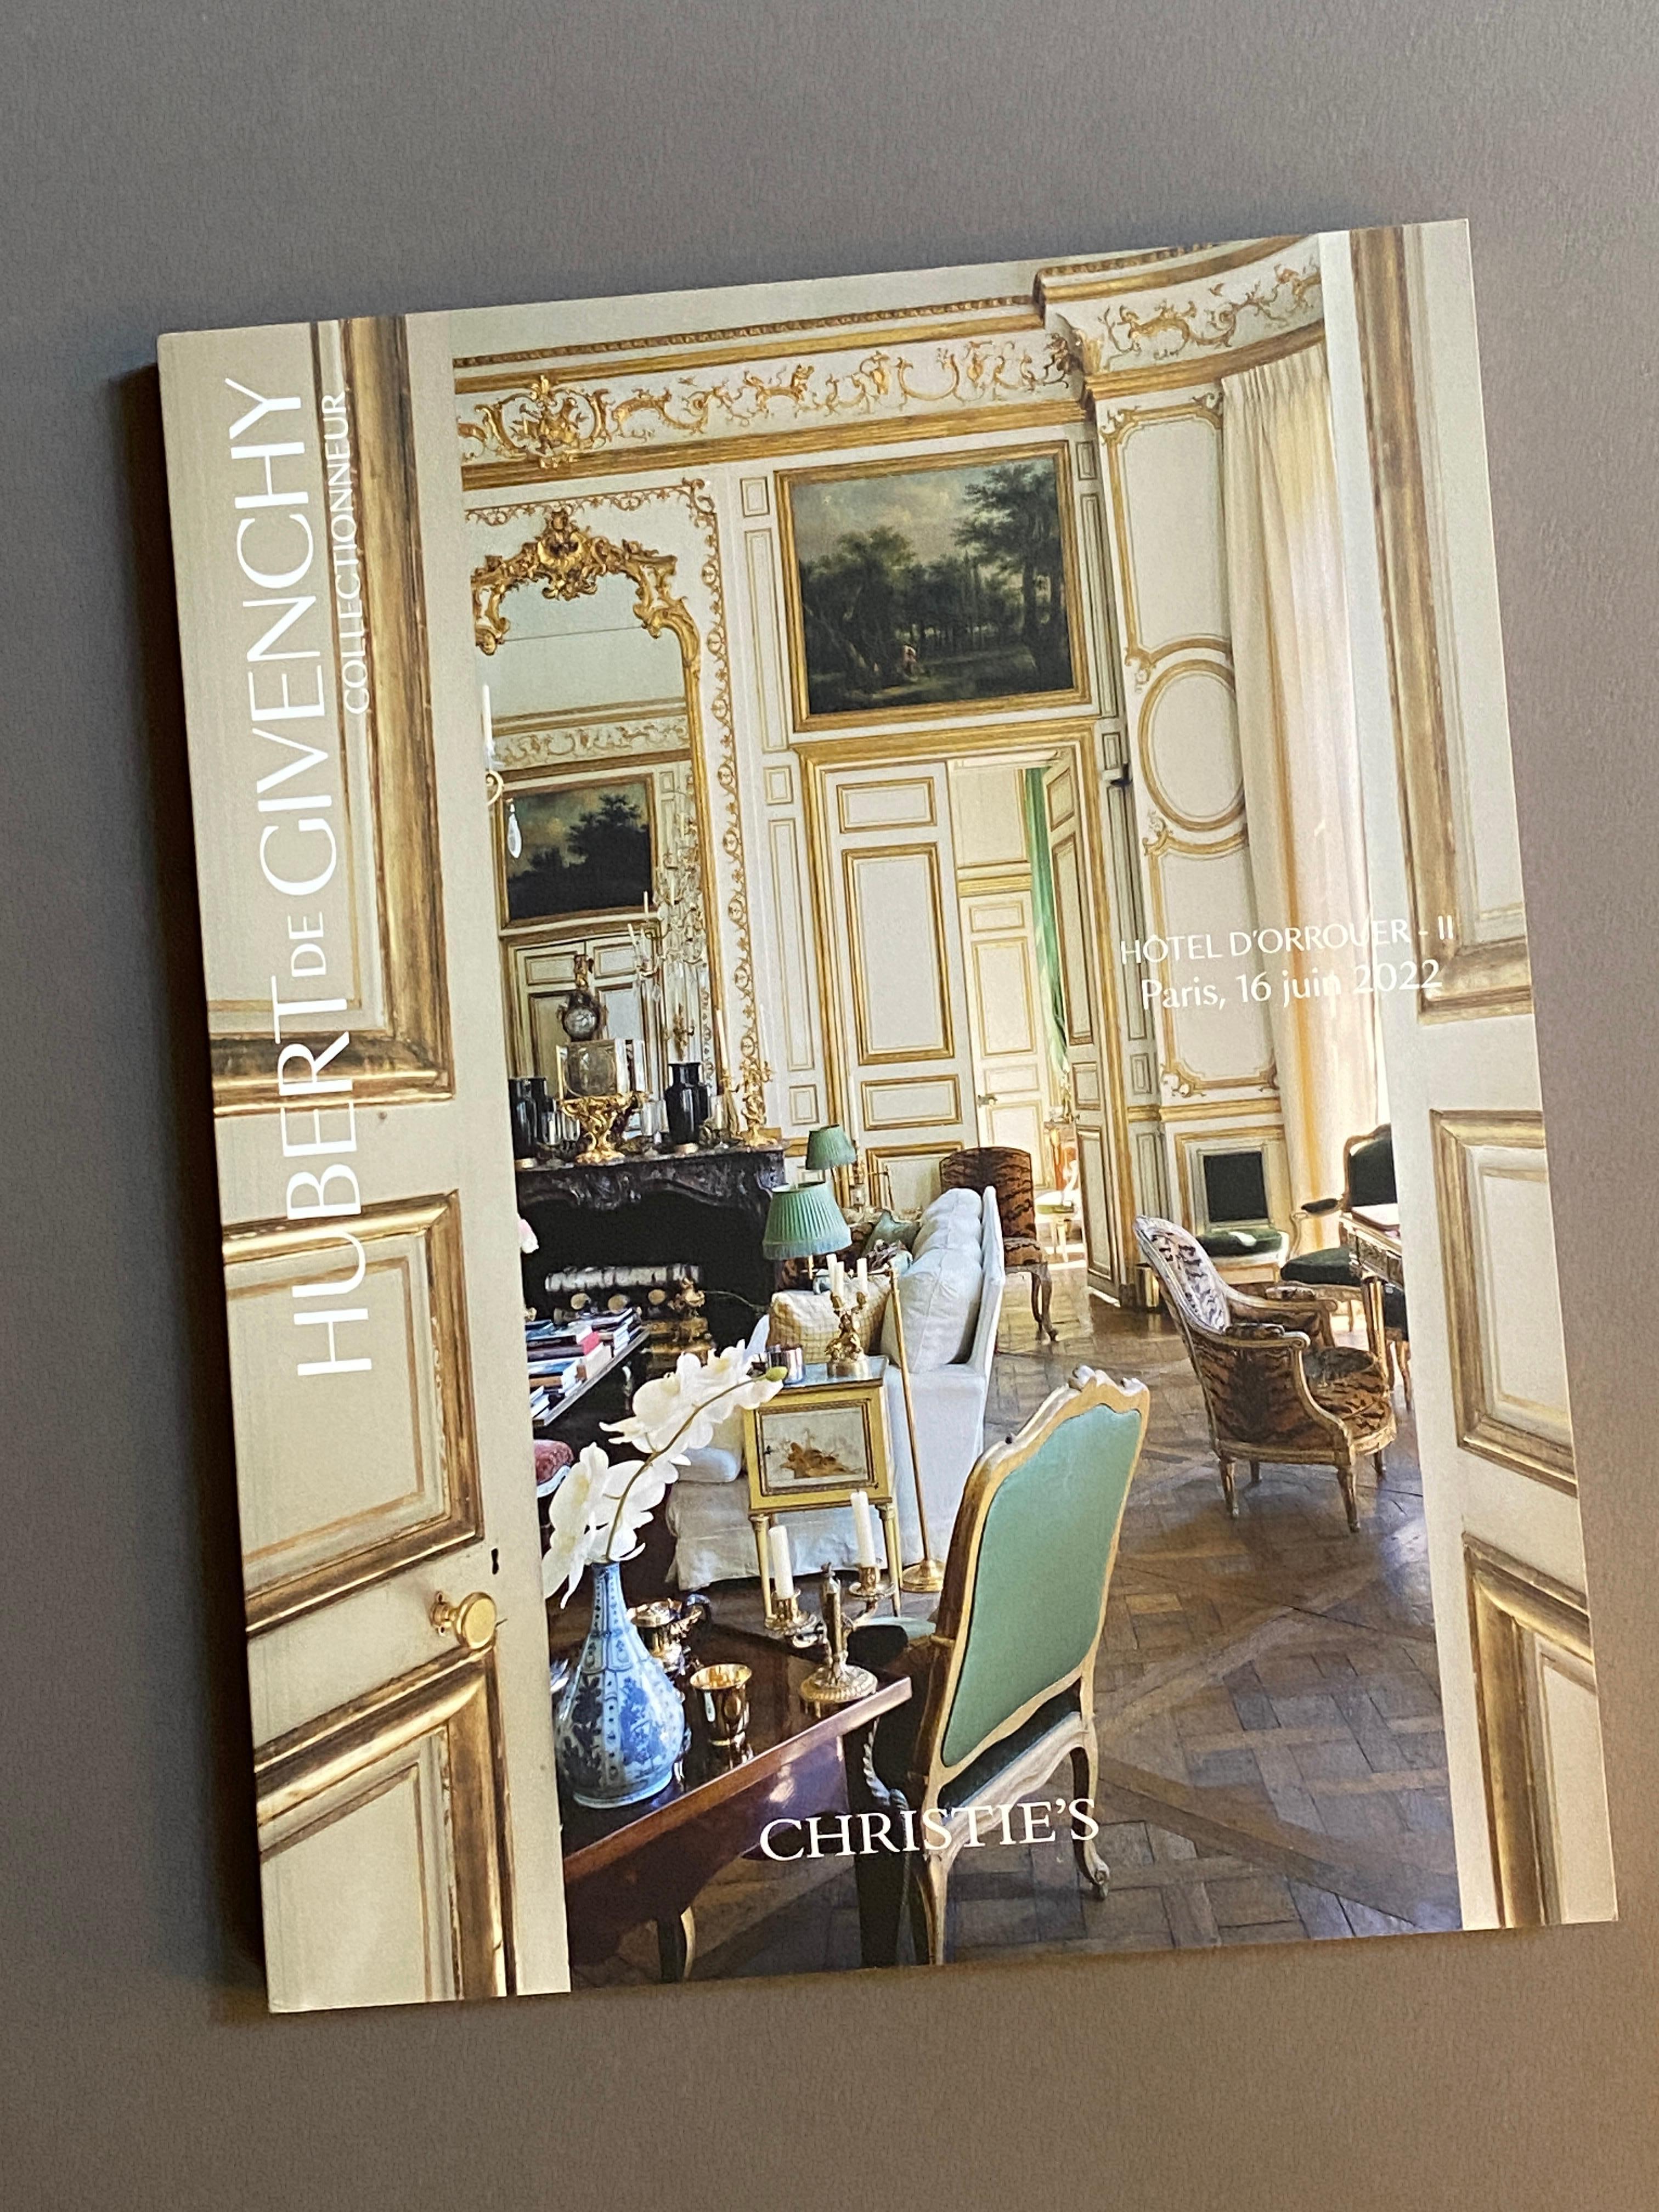 Paper Hubert De Givenchy Collectionneur Paris June 2022 Christie's French Catalog